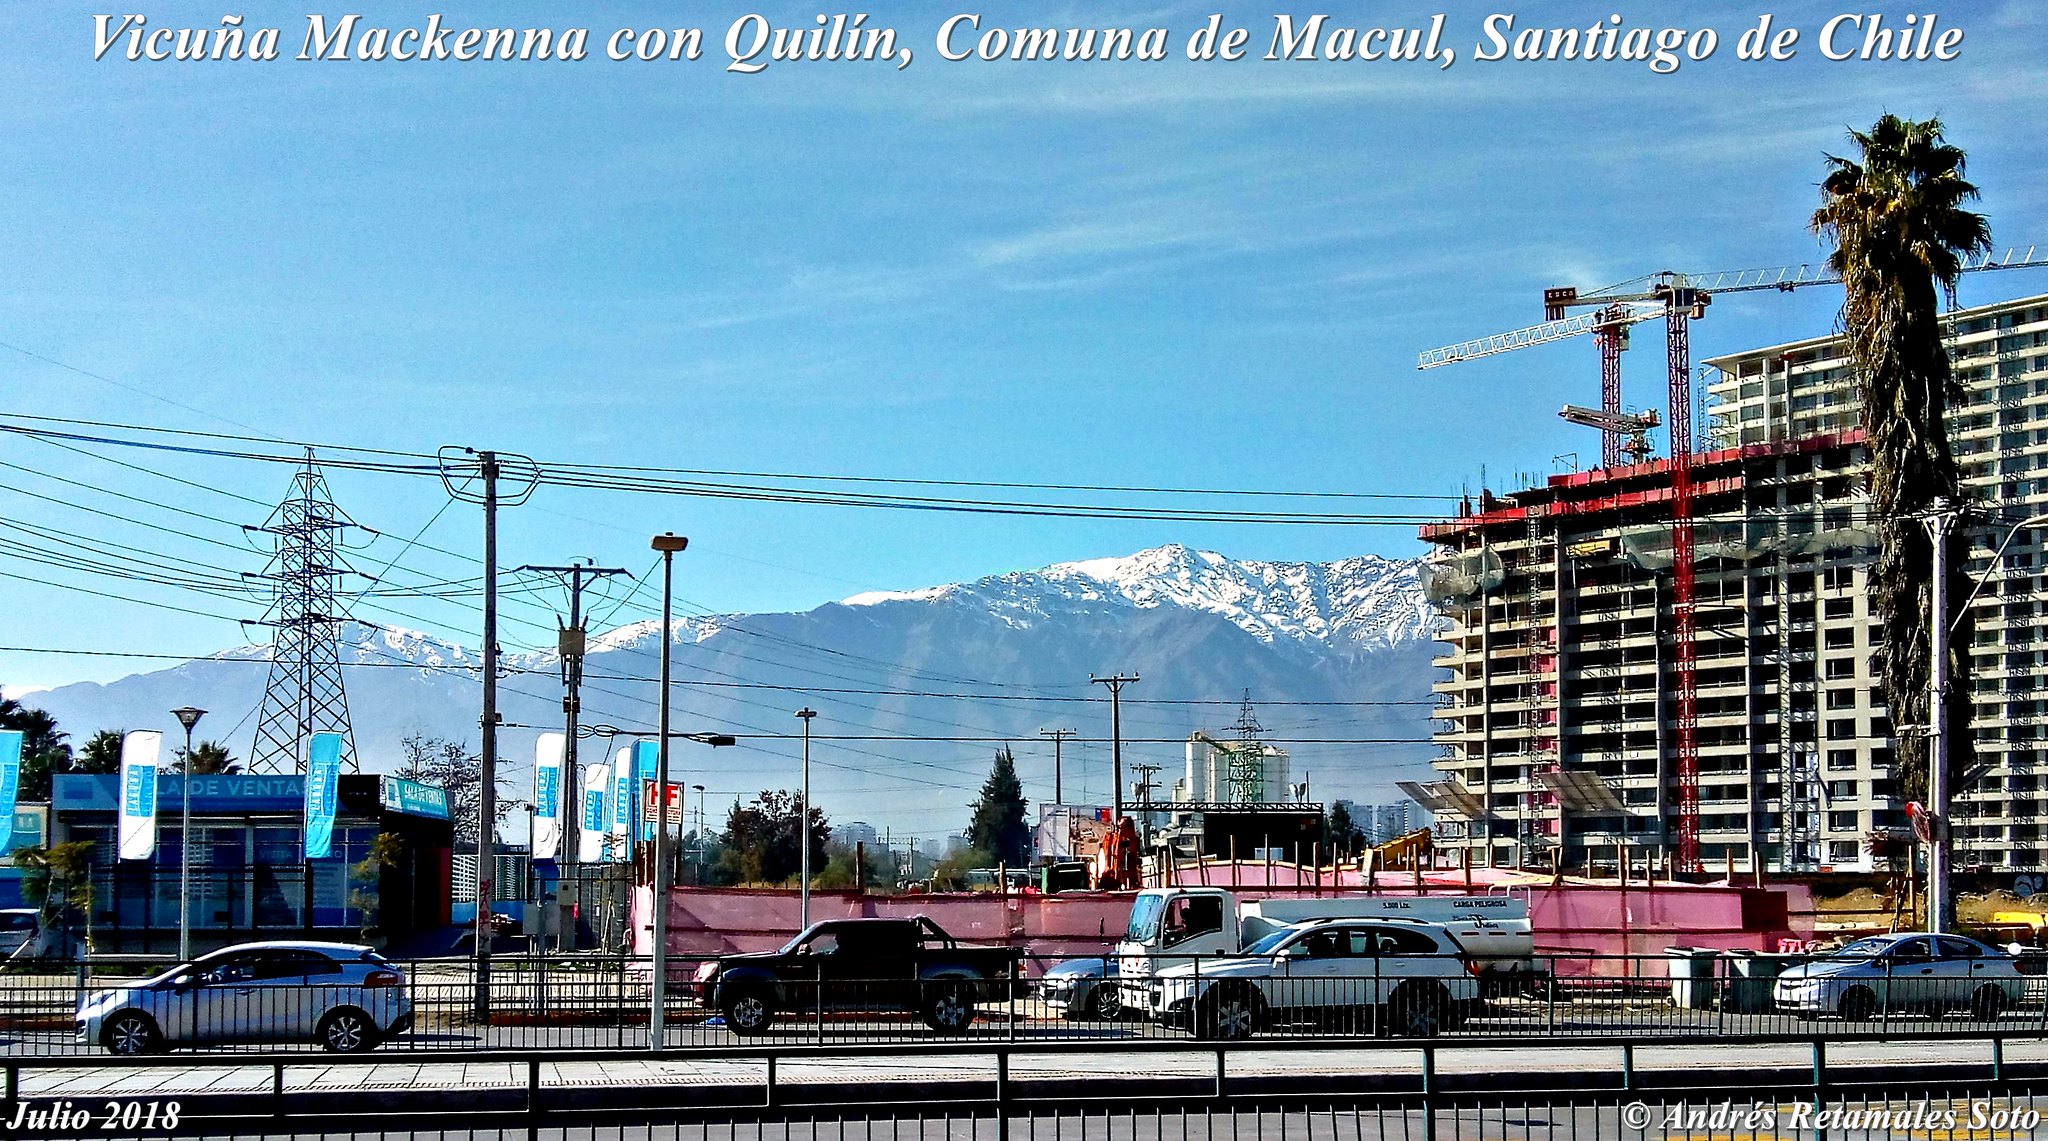 Vicuña Mackenna con Quilín, Comuna de Macul, Santiago de Chile, julio 2018. Vista hacia el oriente